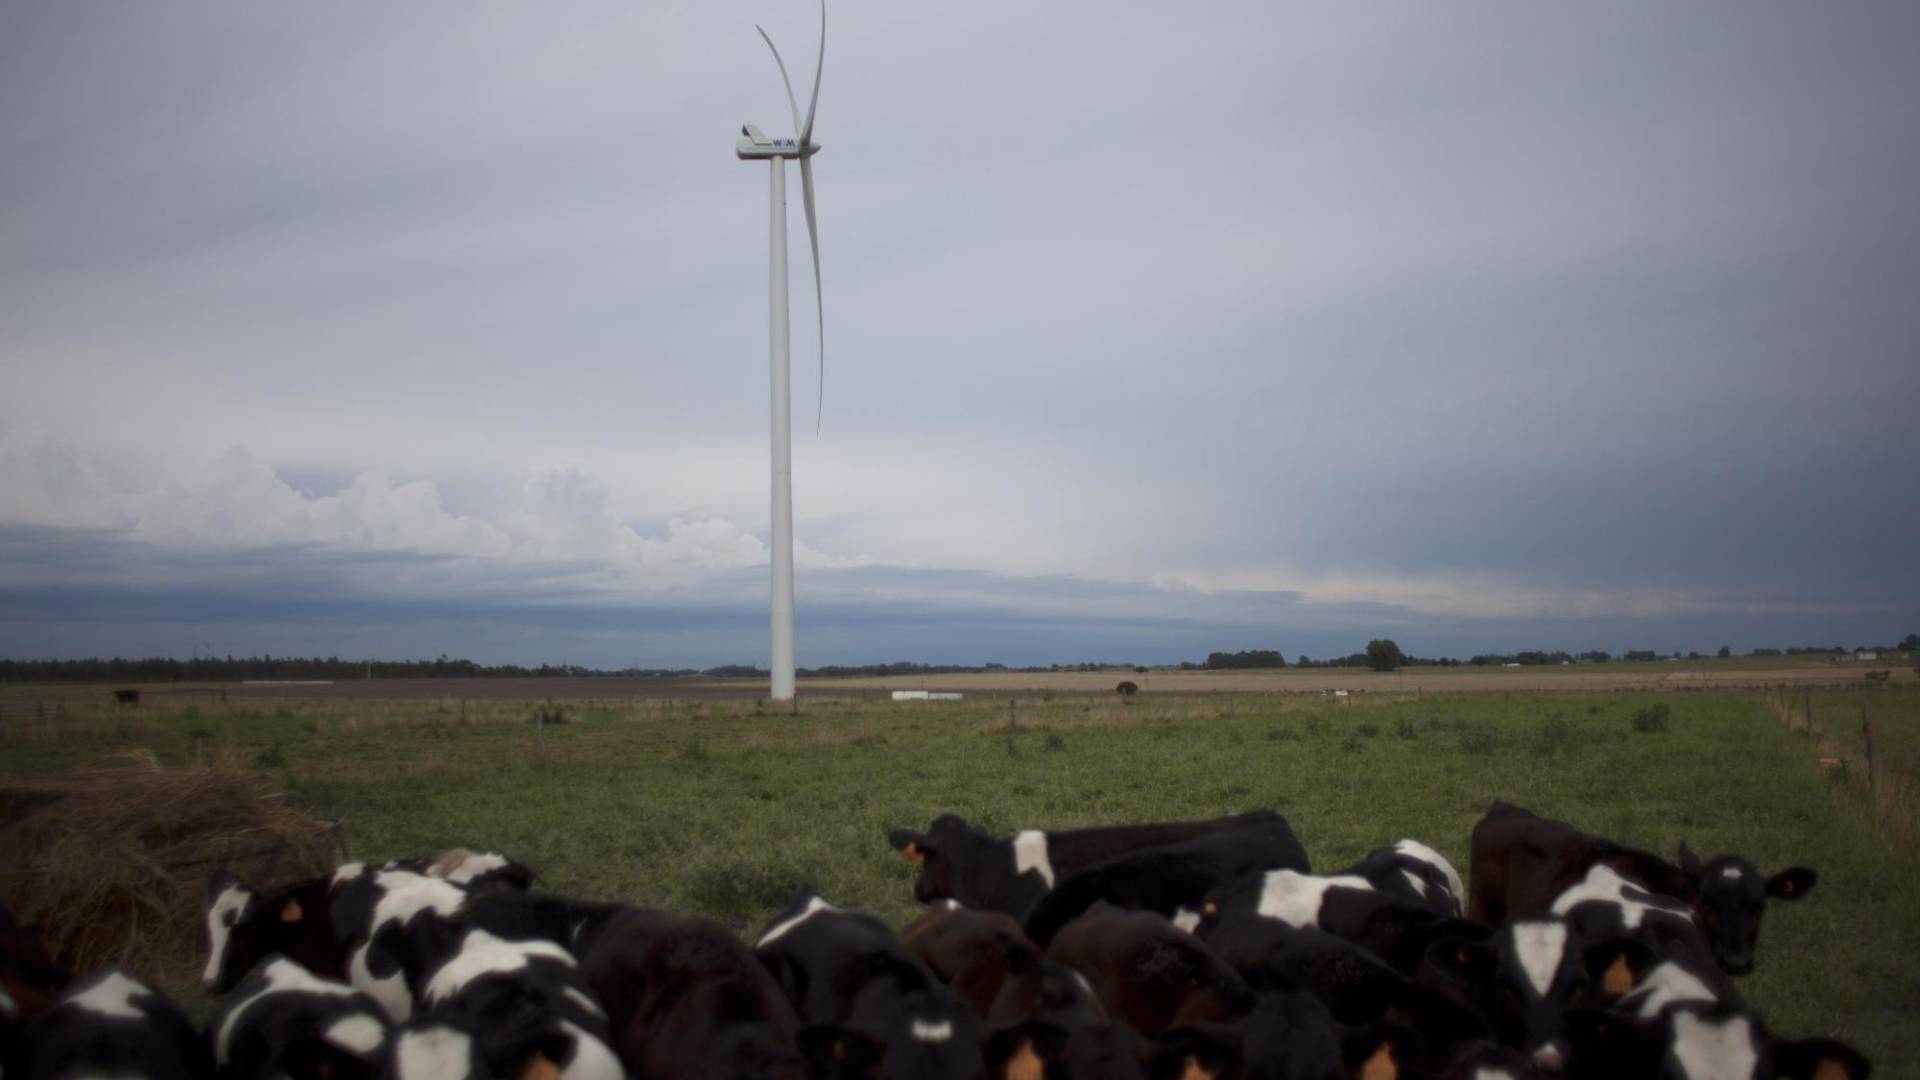 $!Uruguay genera casi toda su electricidad de fuentes renovables. Energía eólica en un parque cerca de Montevideo.